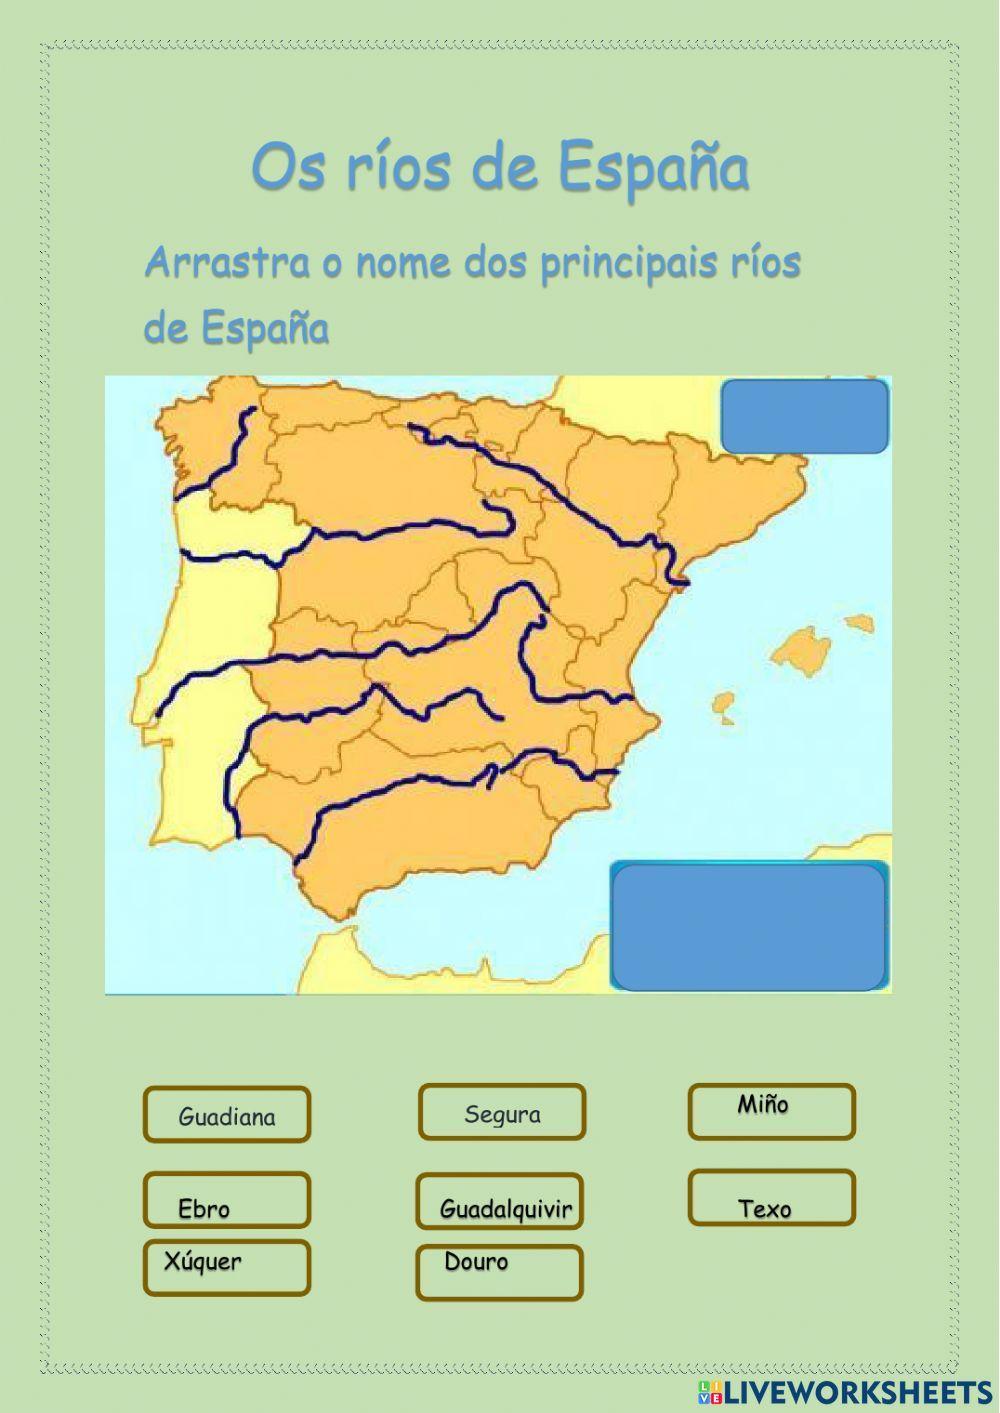 Os principais ríos de España